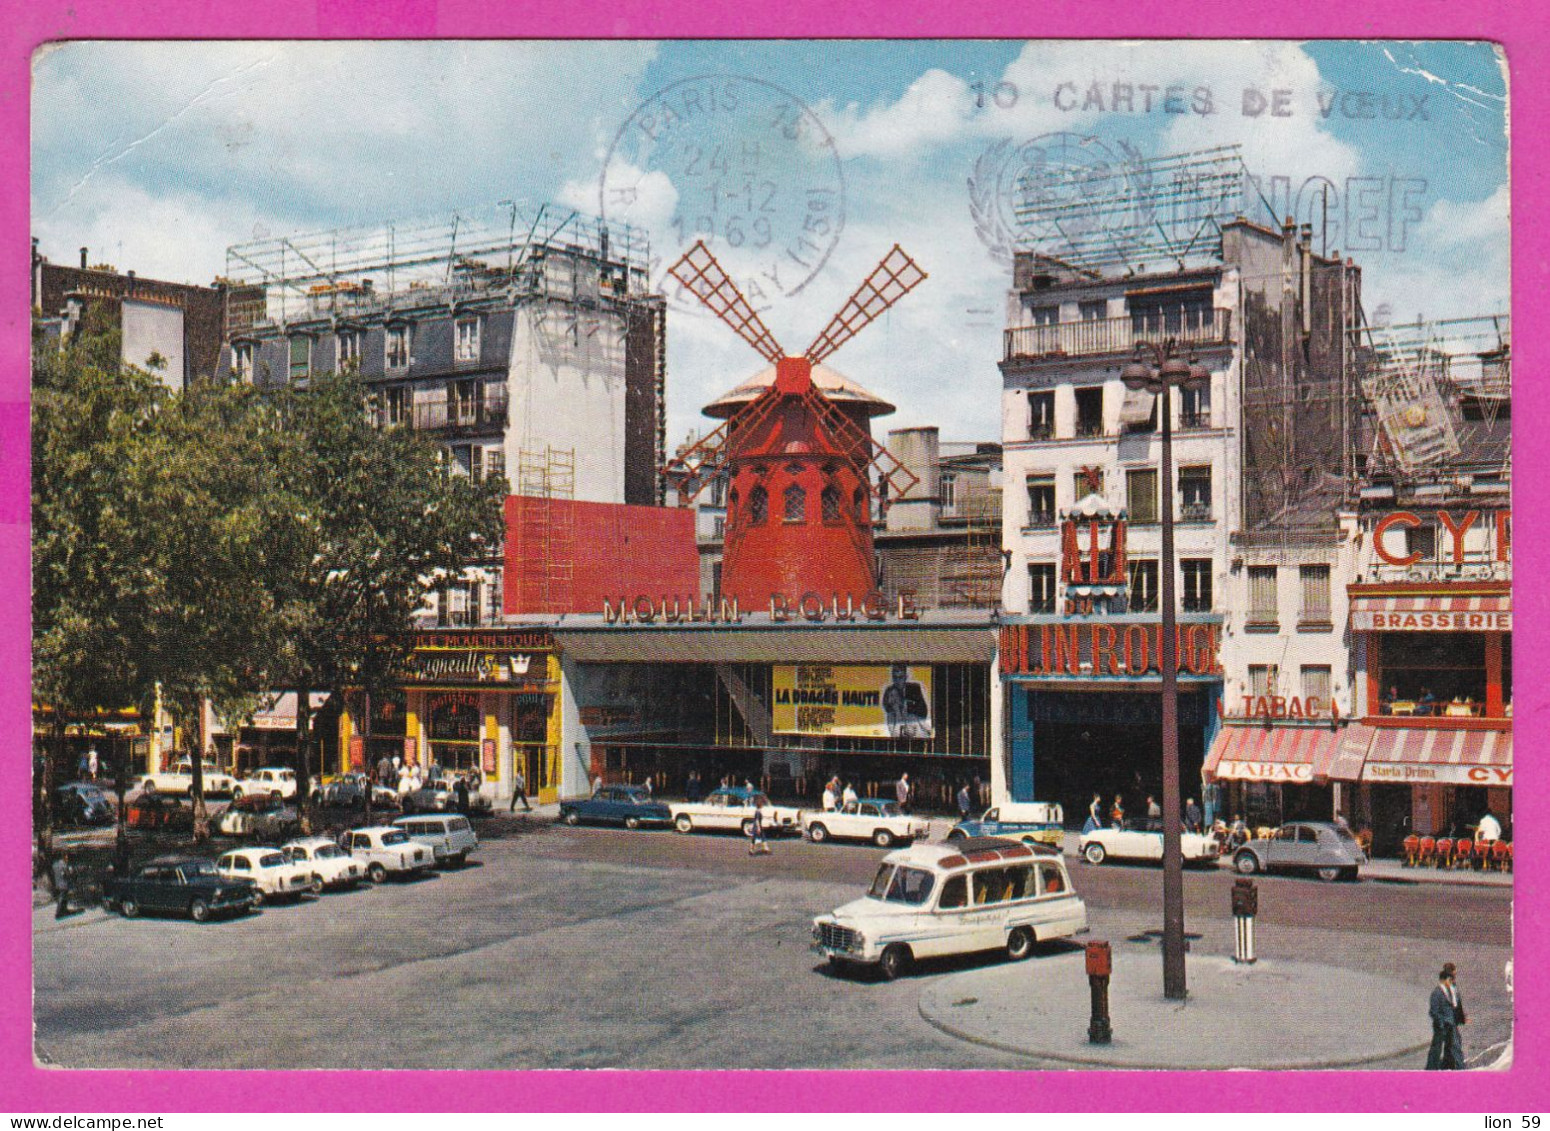 294195 / France - PARIS Moulin Rouge PC 1969 USED 0.40 Fr. Marianne De Cheffer Flamme 10 CARTES DE VOEUX UNICEF = 1 ENFA - 1967-1970 Marianne De Cheffer